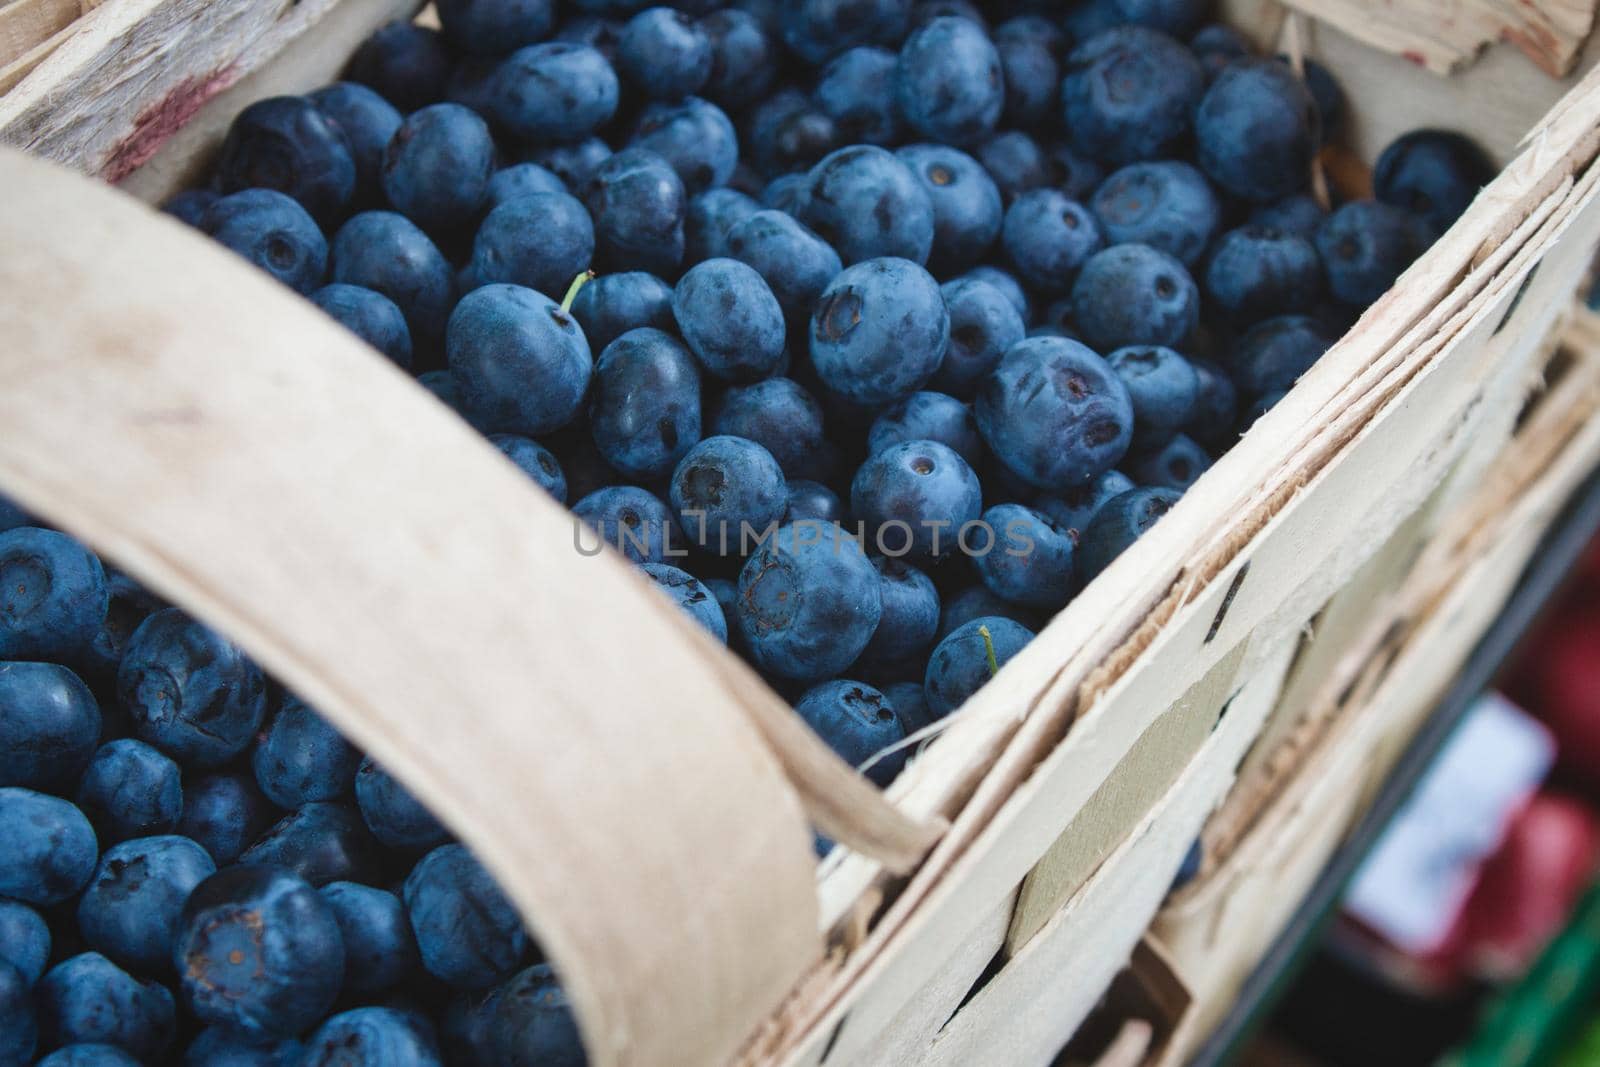 A basket full of fresh ripe blueberries